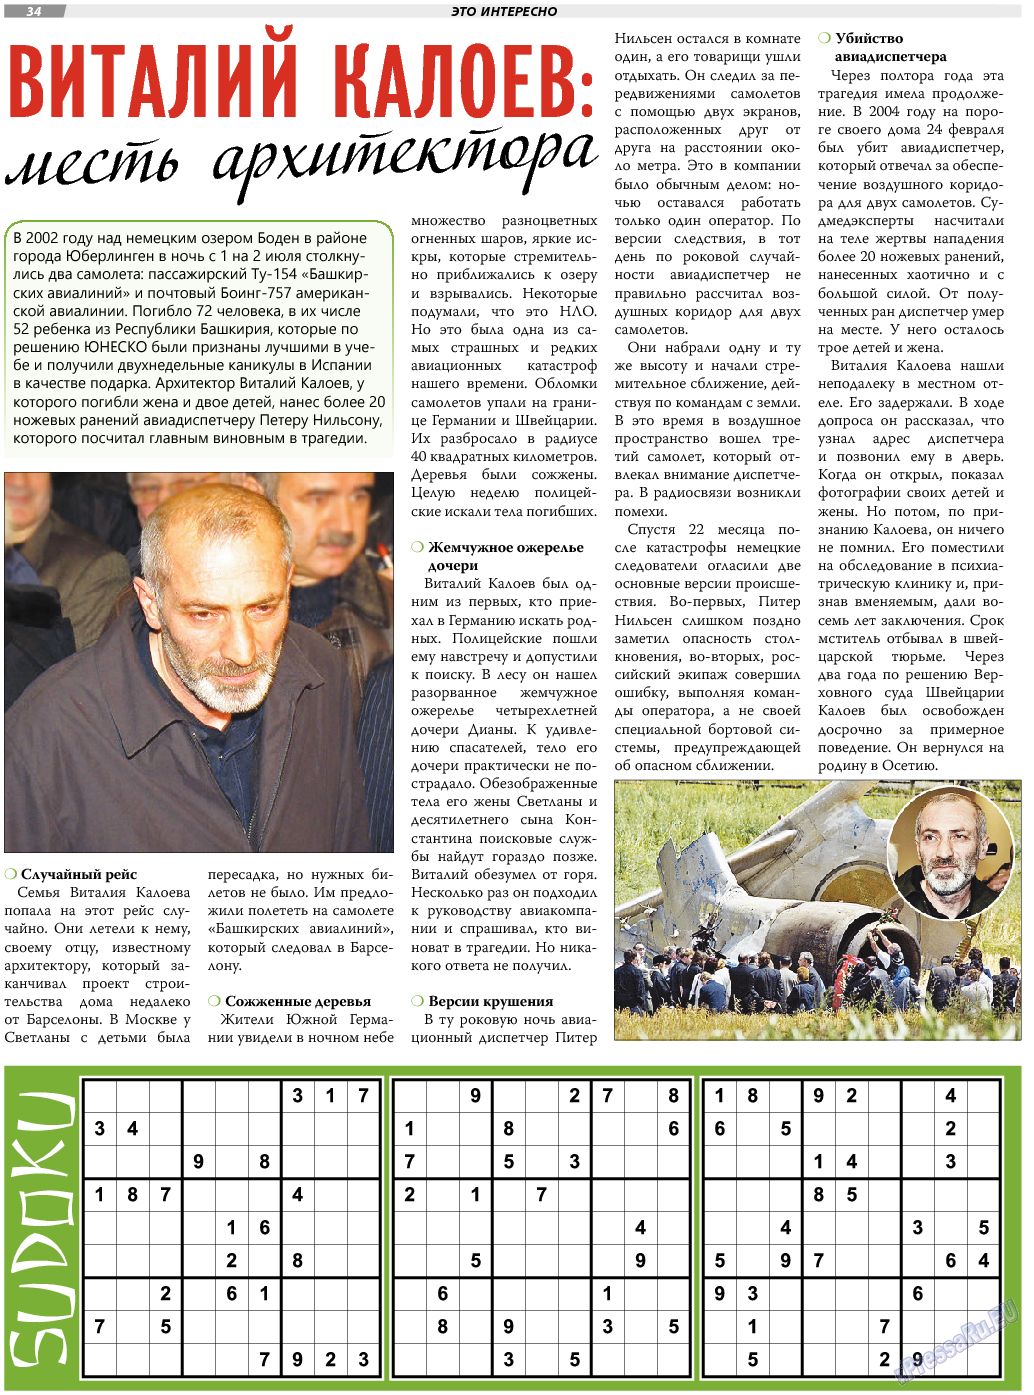 TVrus (газета). 2018 год, номер 11, стр. 34